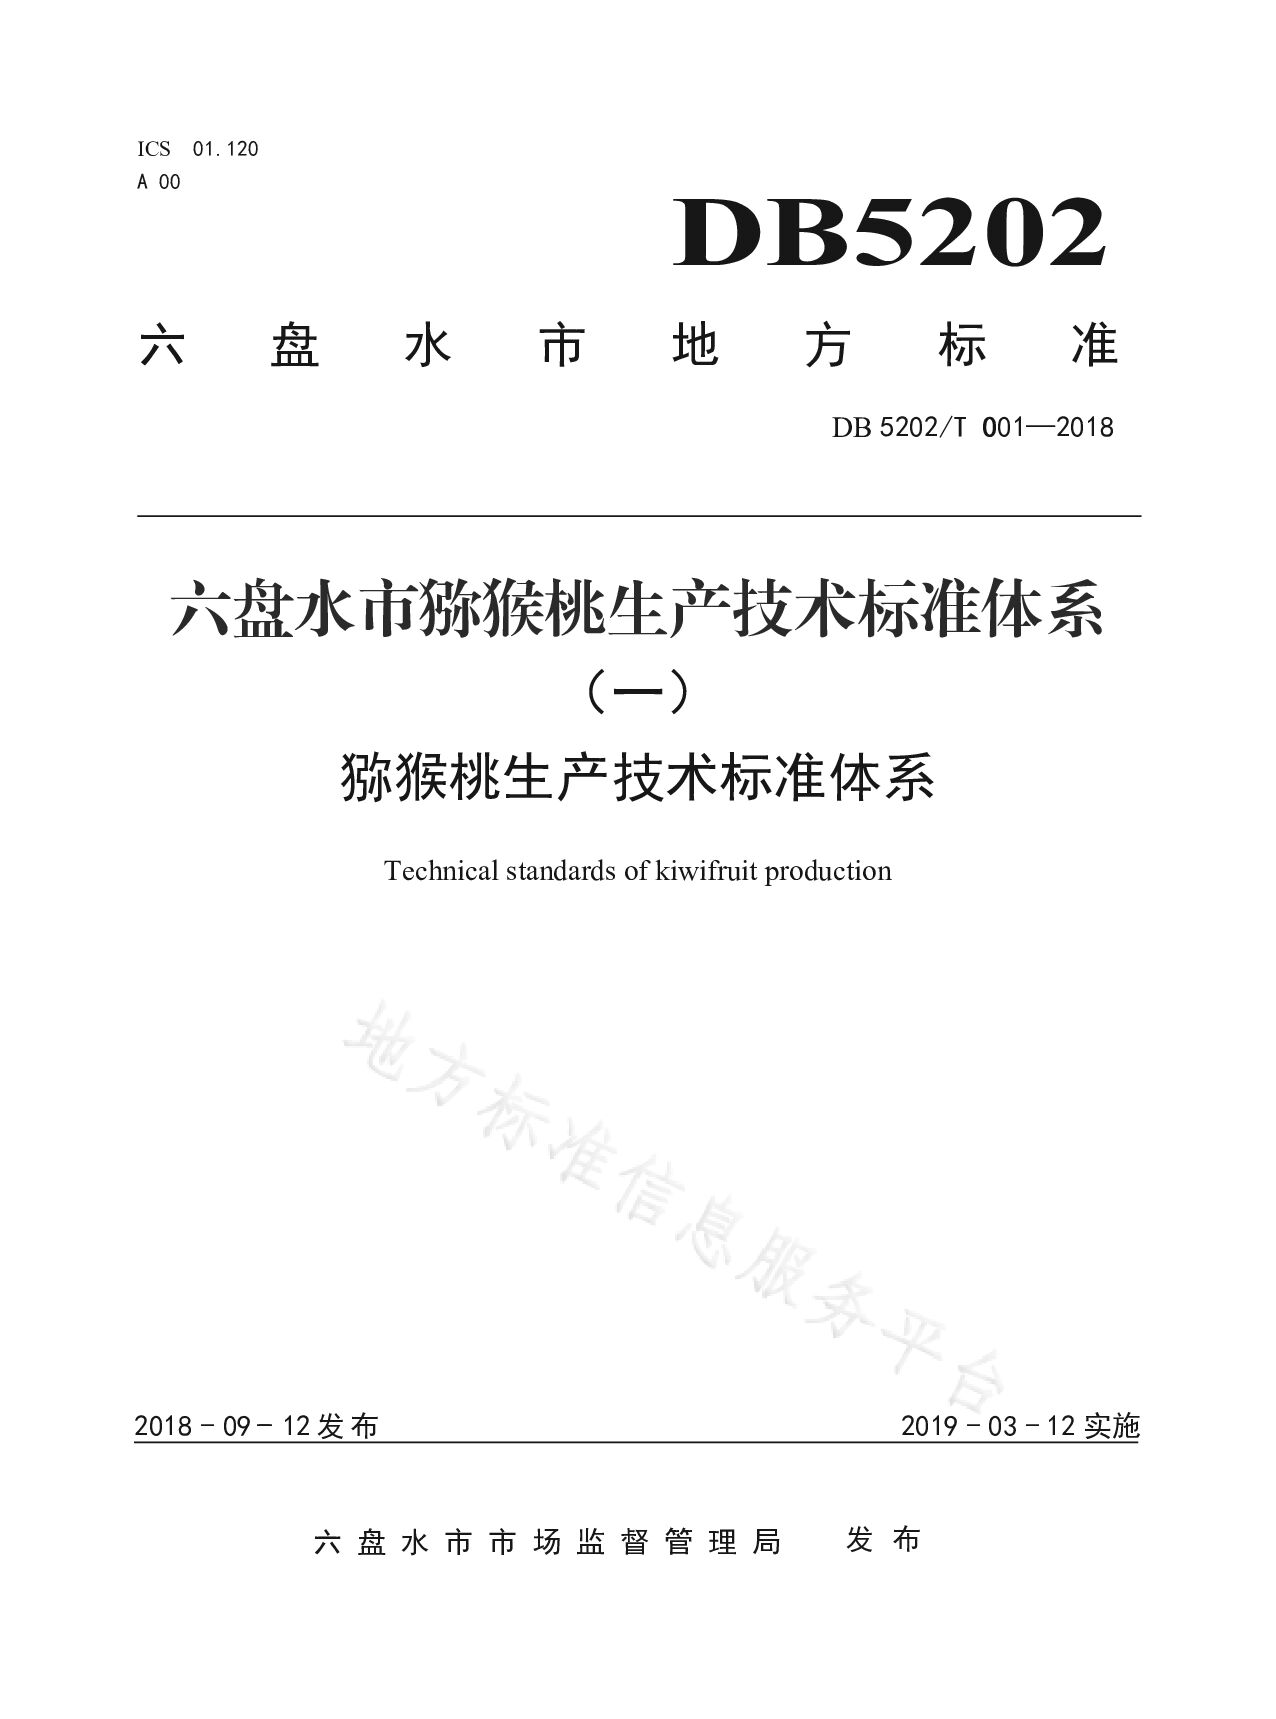 DB5202/T 001-2018封面图